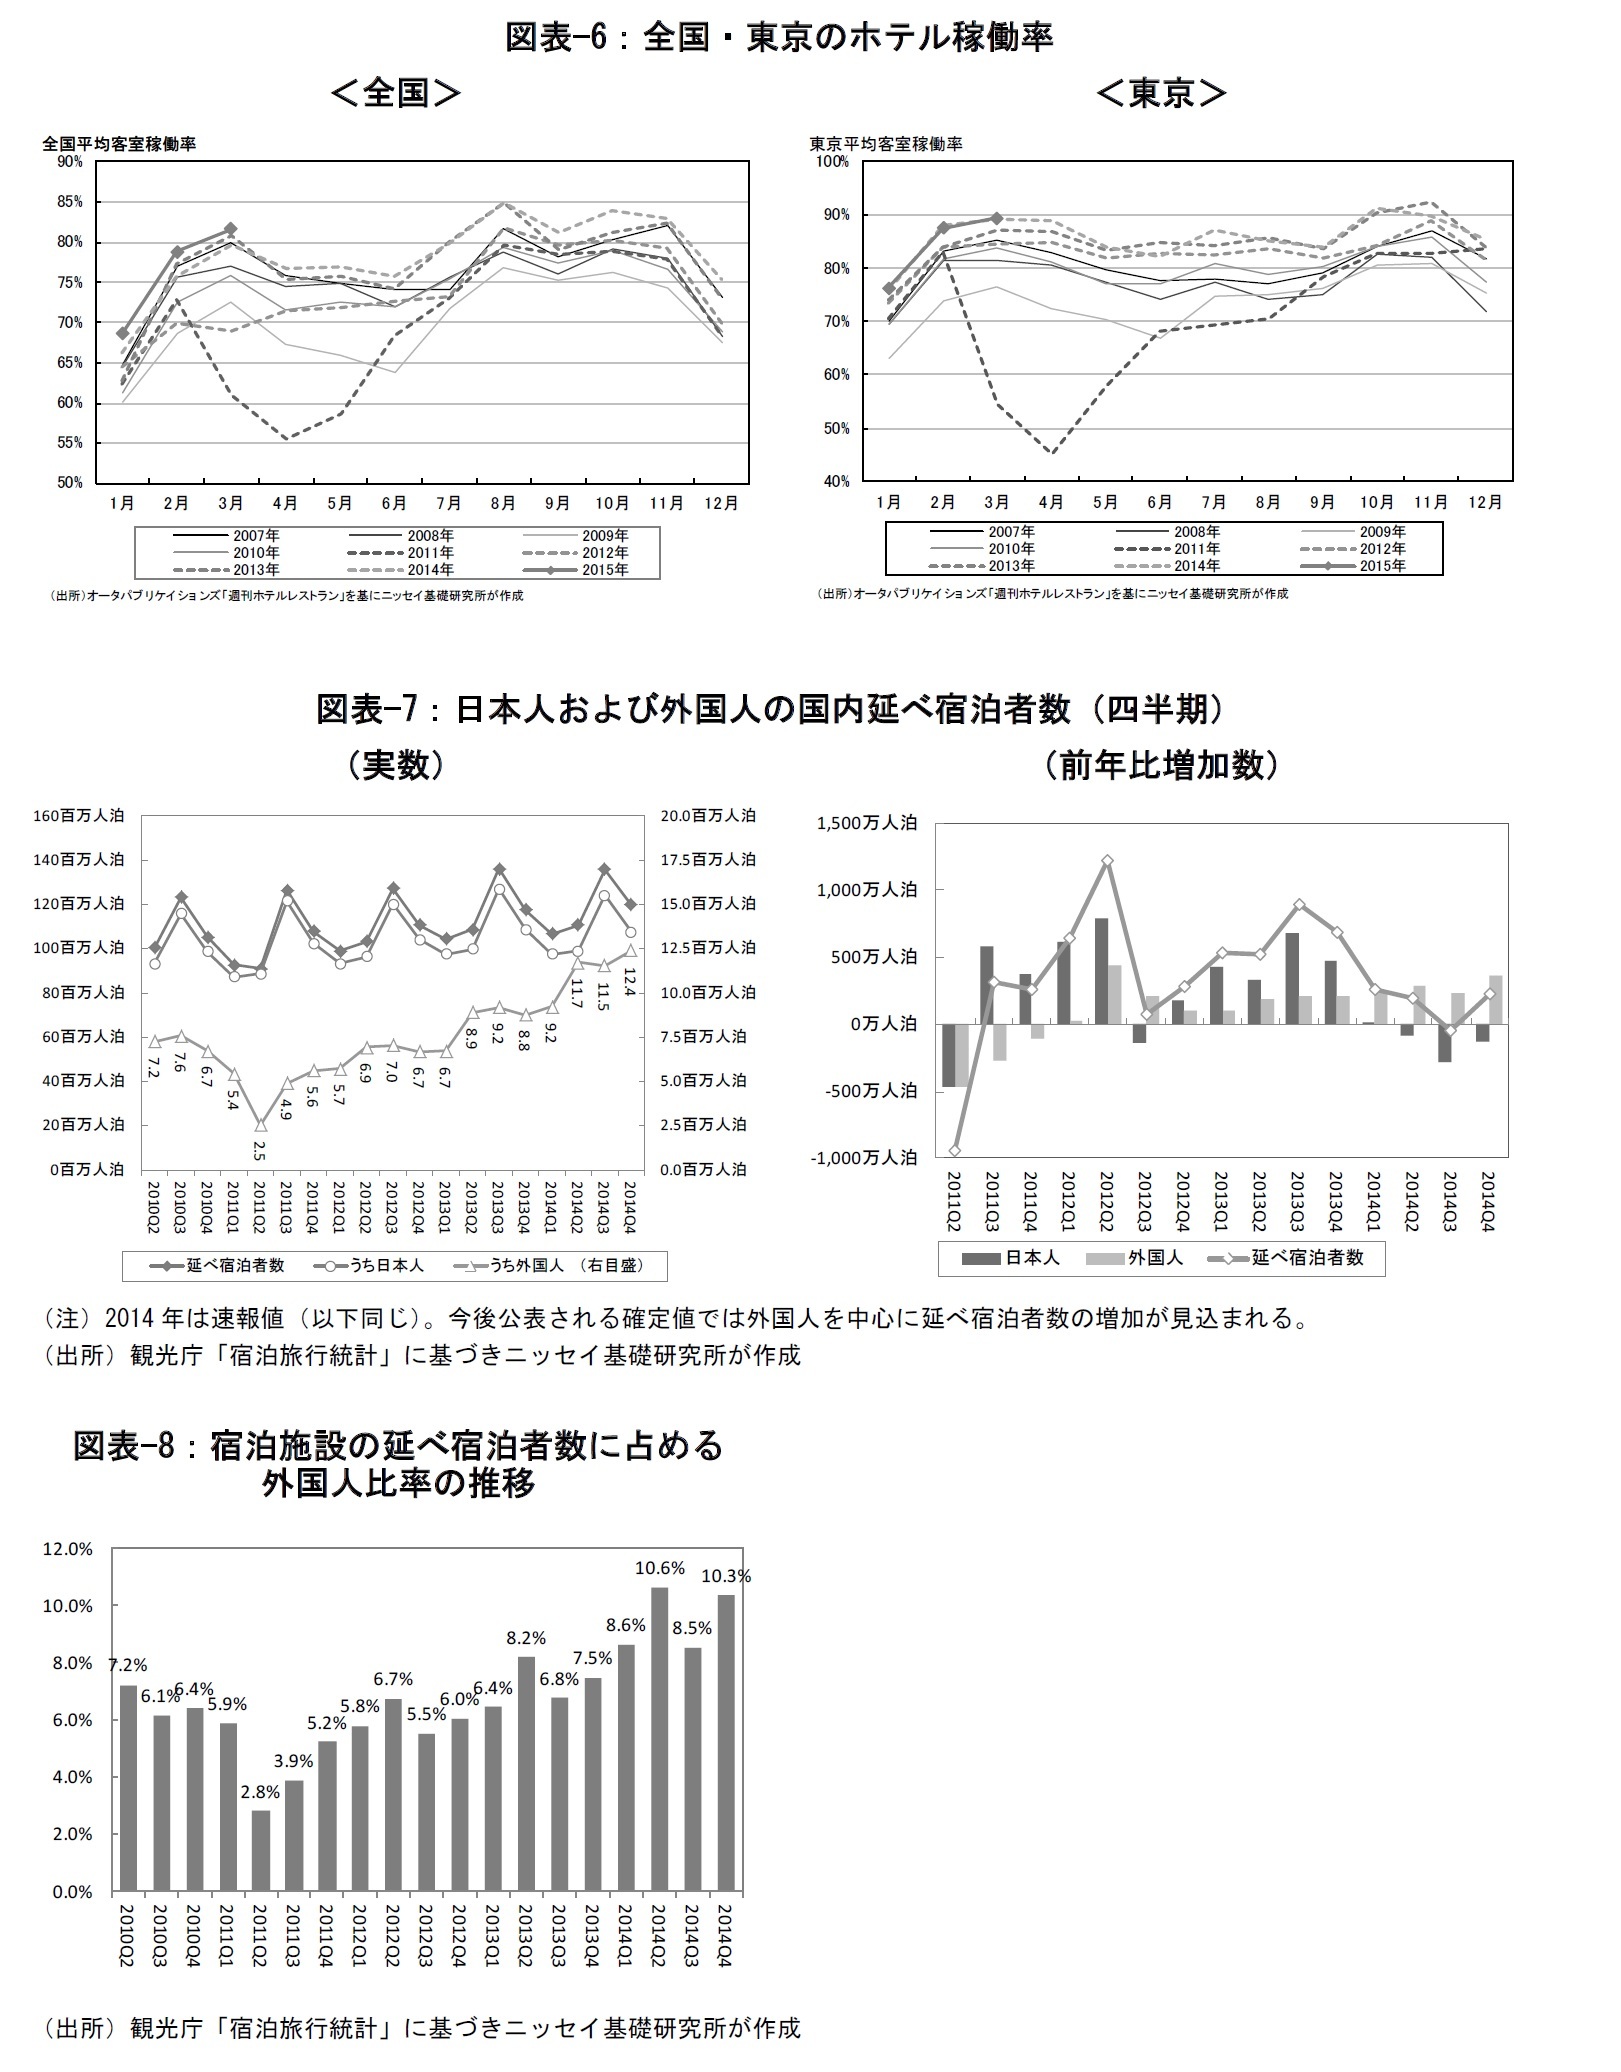 図表-6：全国・東京のホテル稼働率/図表-7：日本人および外国人の国内延べ宿泊者数（四半期）/図表-8：宿泊施設の延べ宿泊者数に占める外国人比率の推移